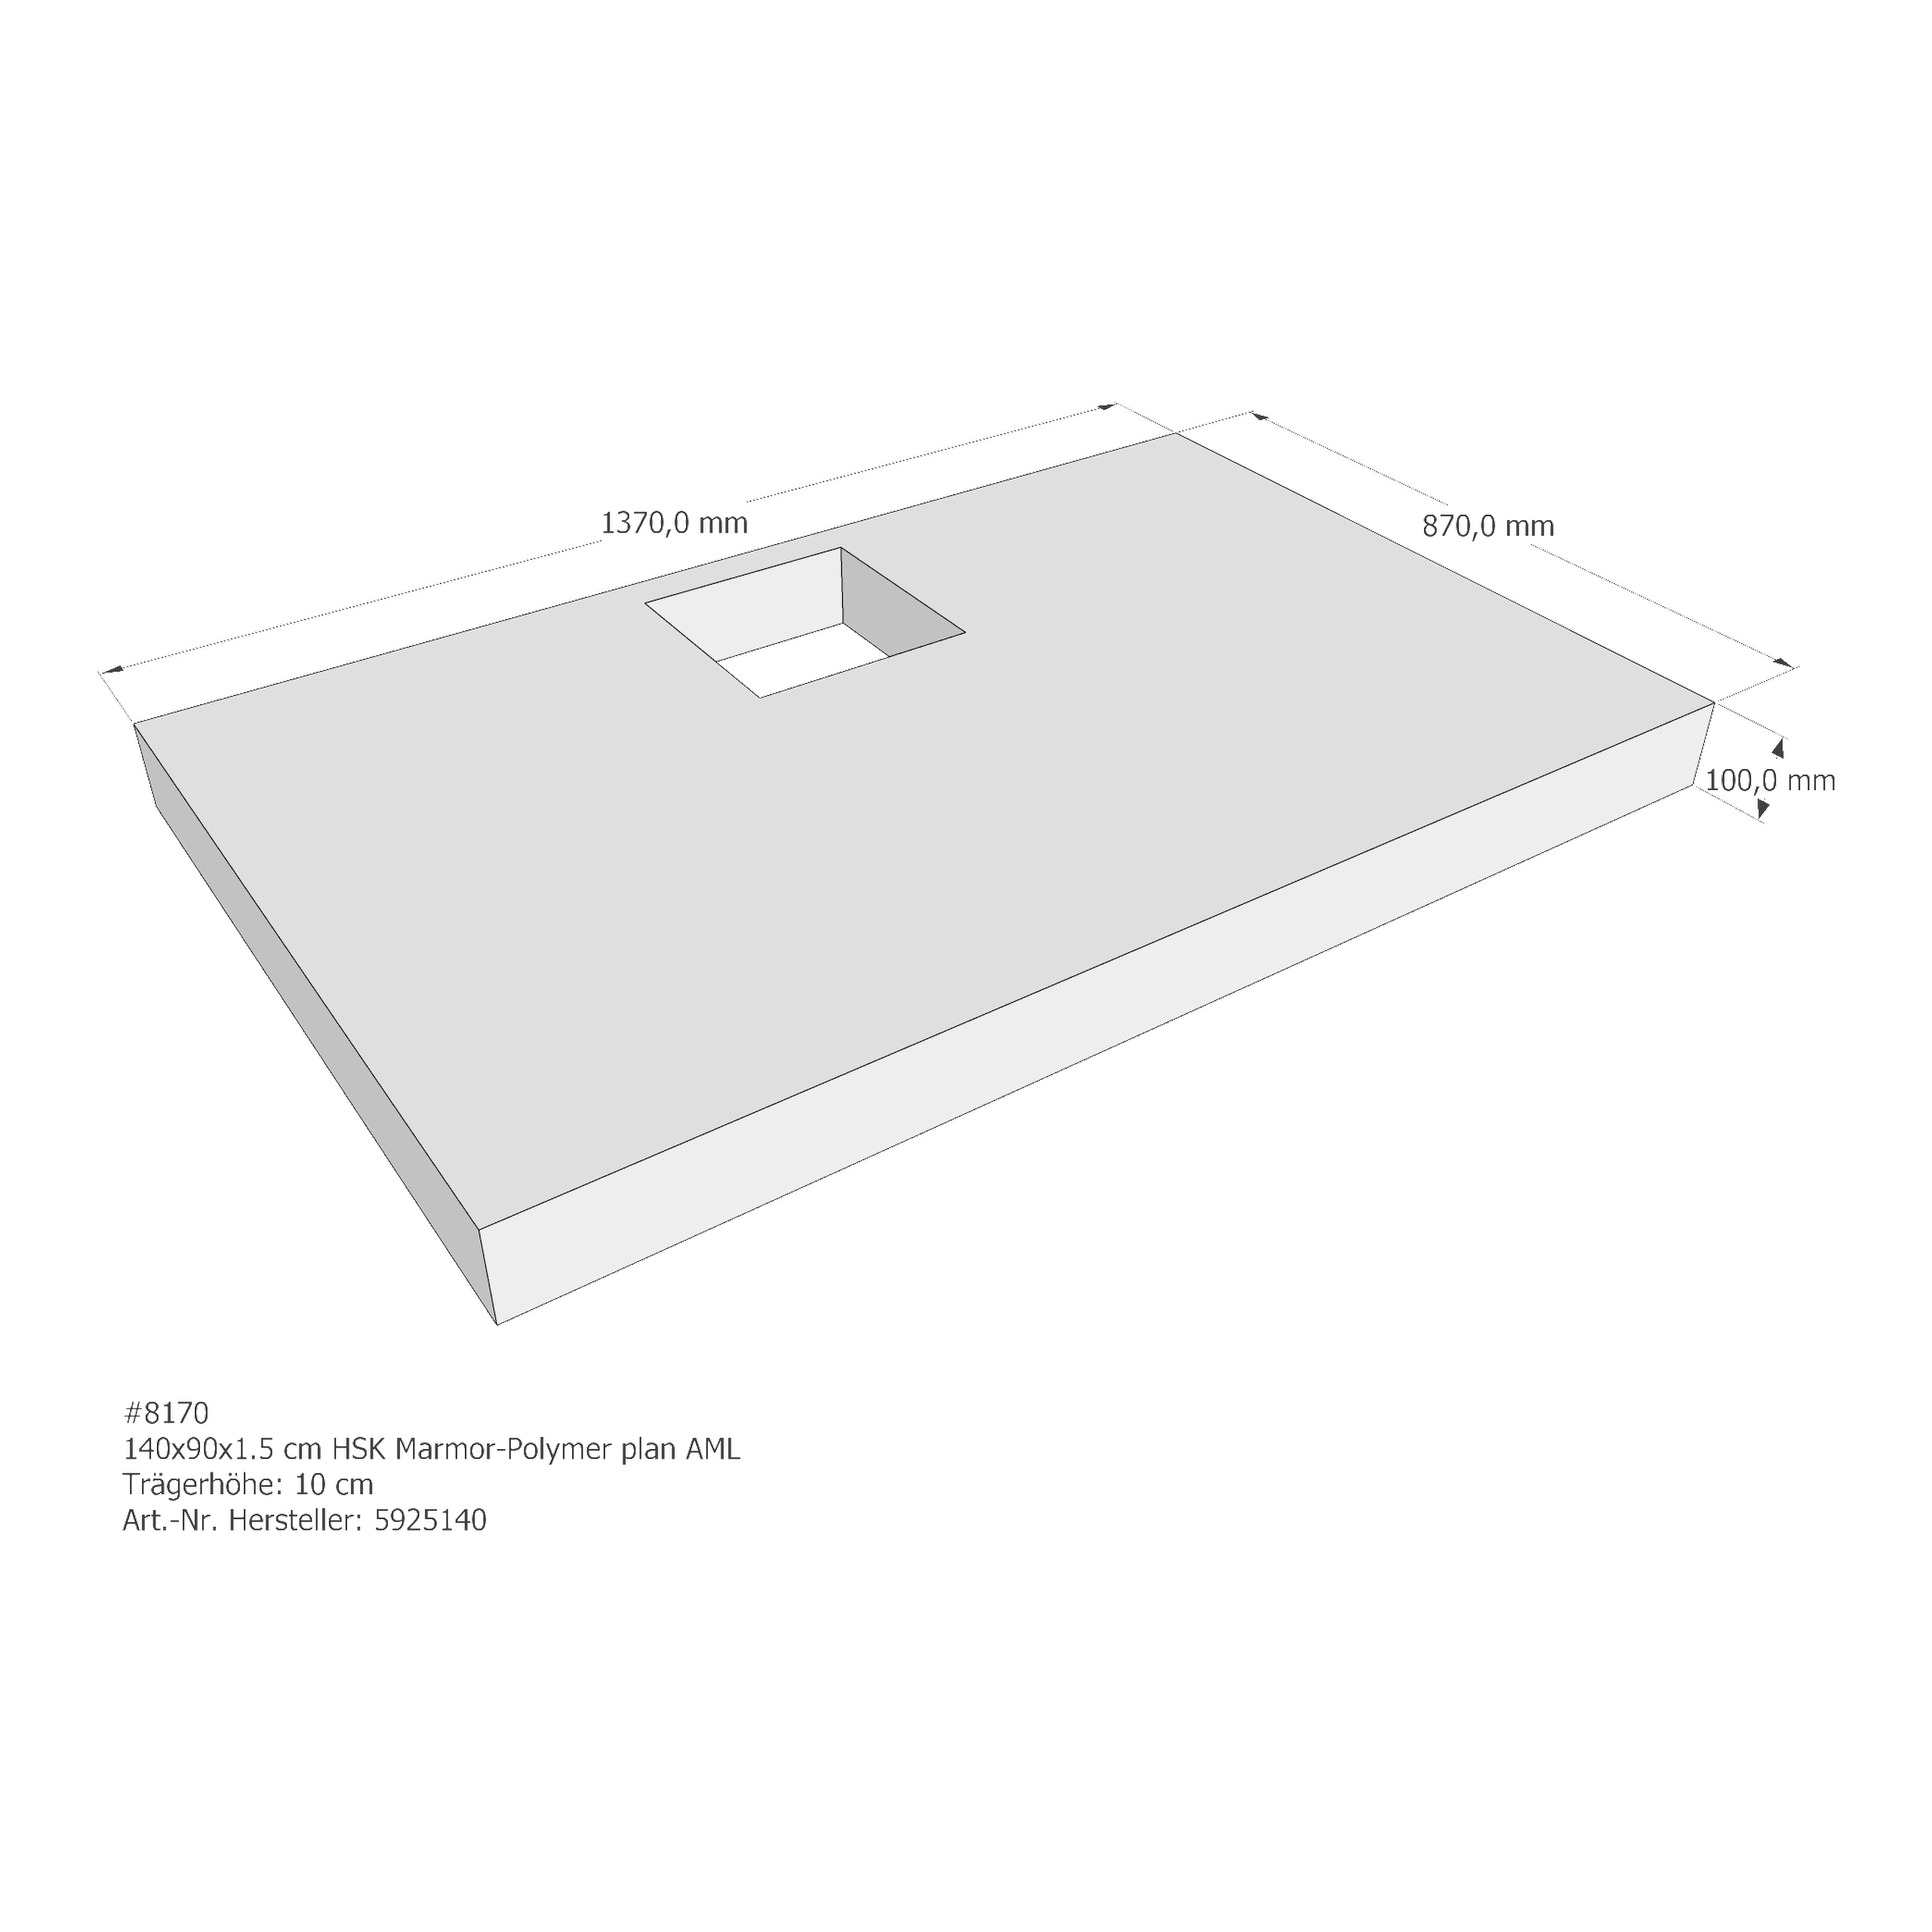 Duschwannenträger HSK Marmor-Polymer plan 140x90x1,5 cm AML